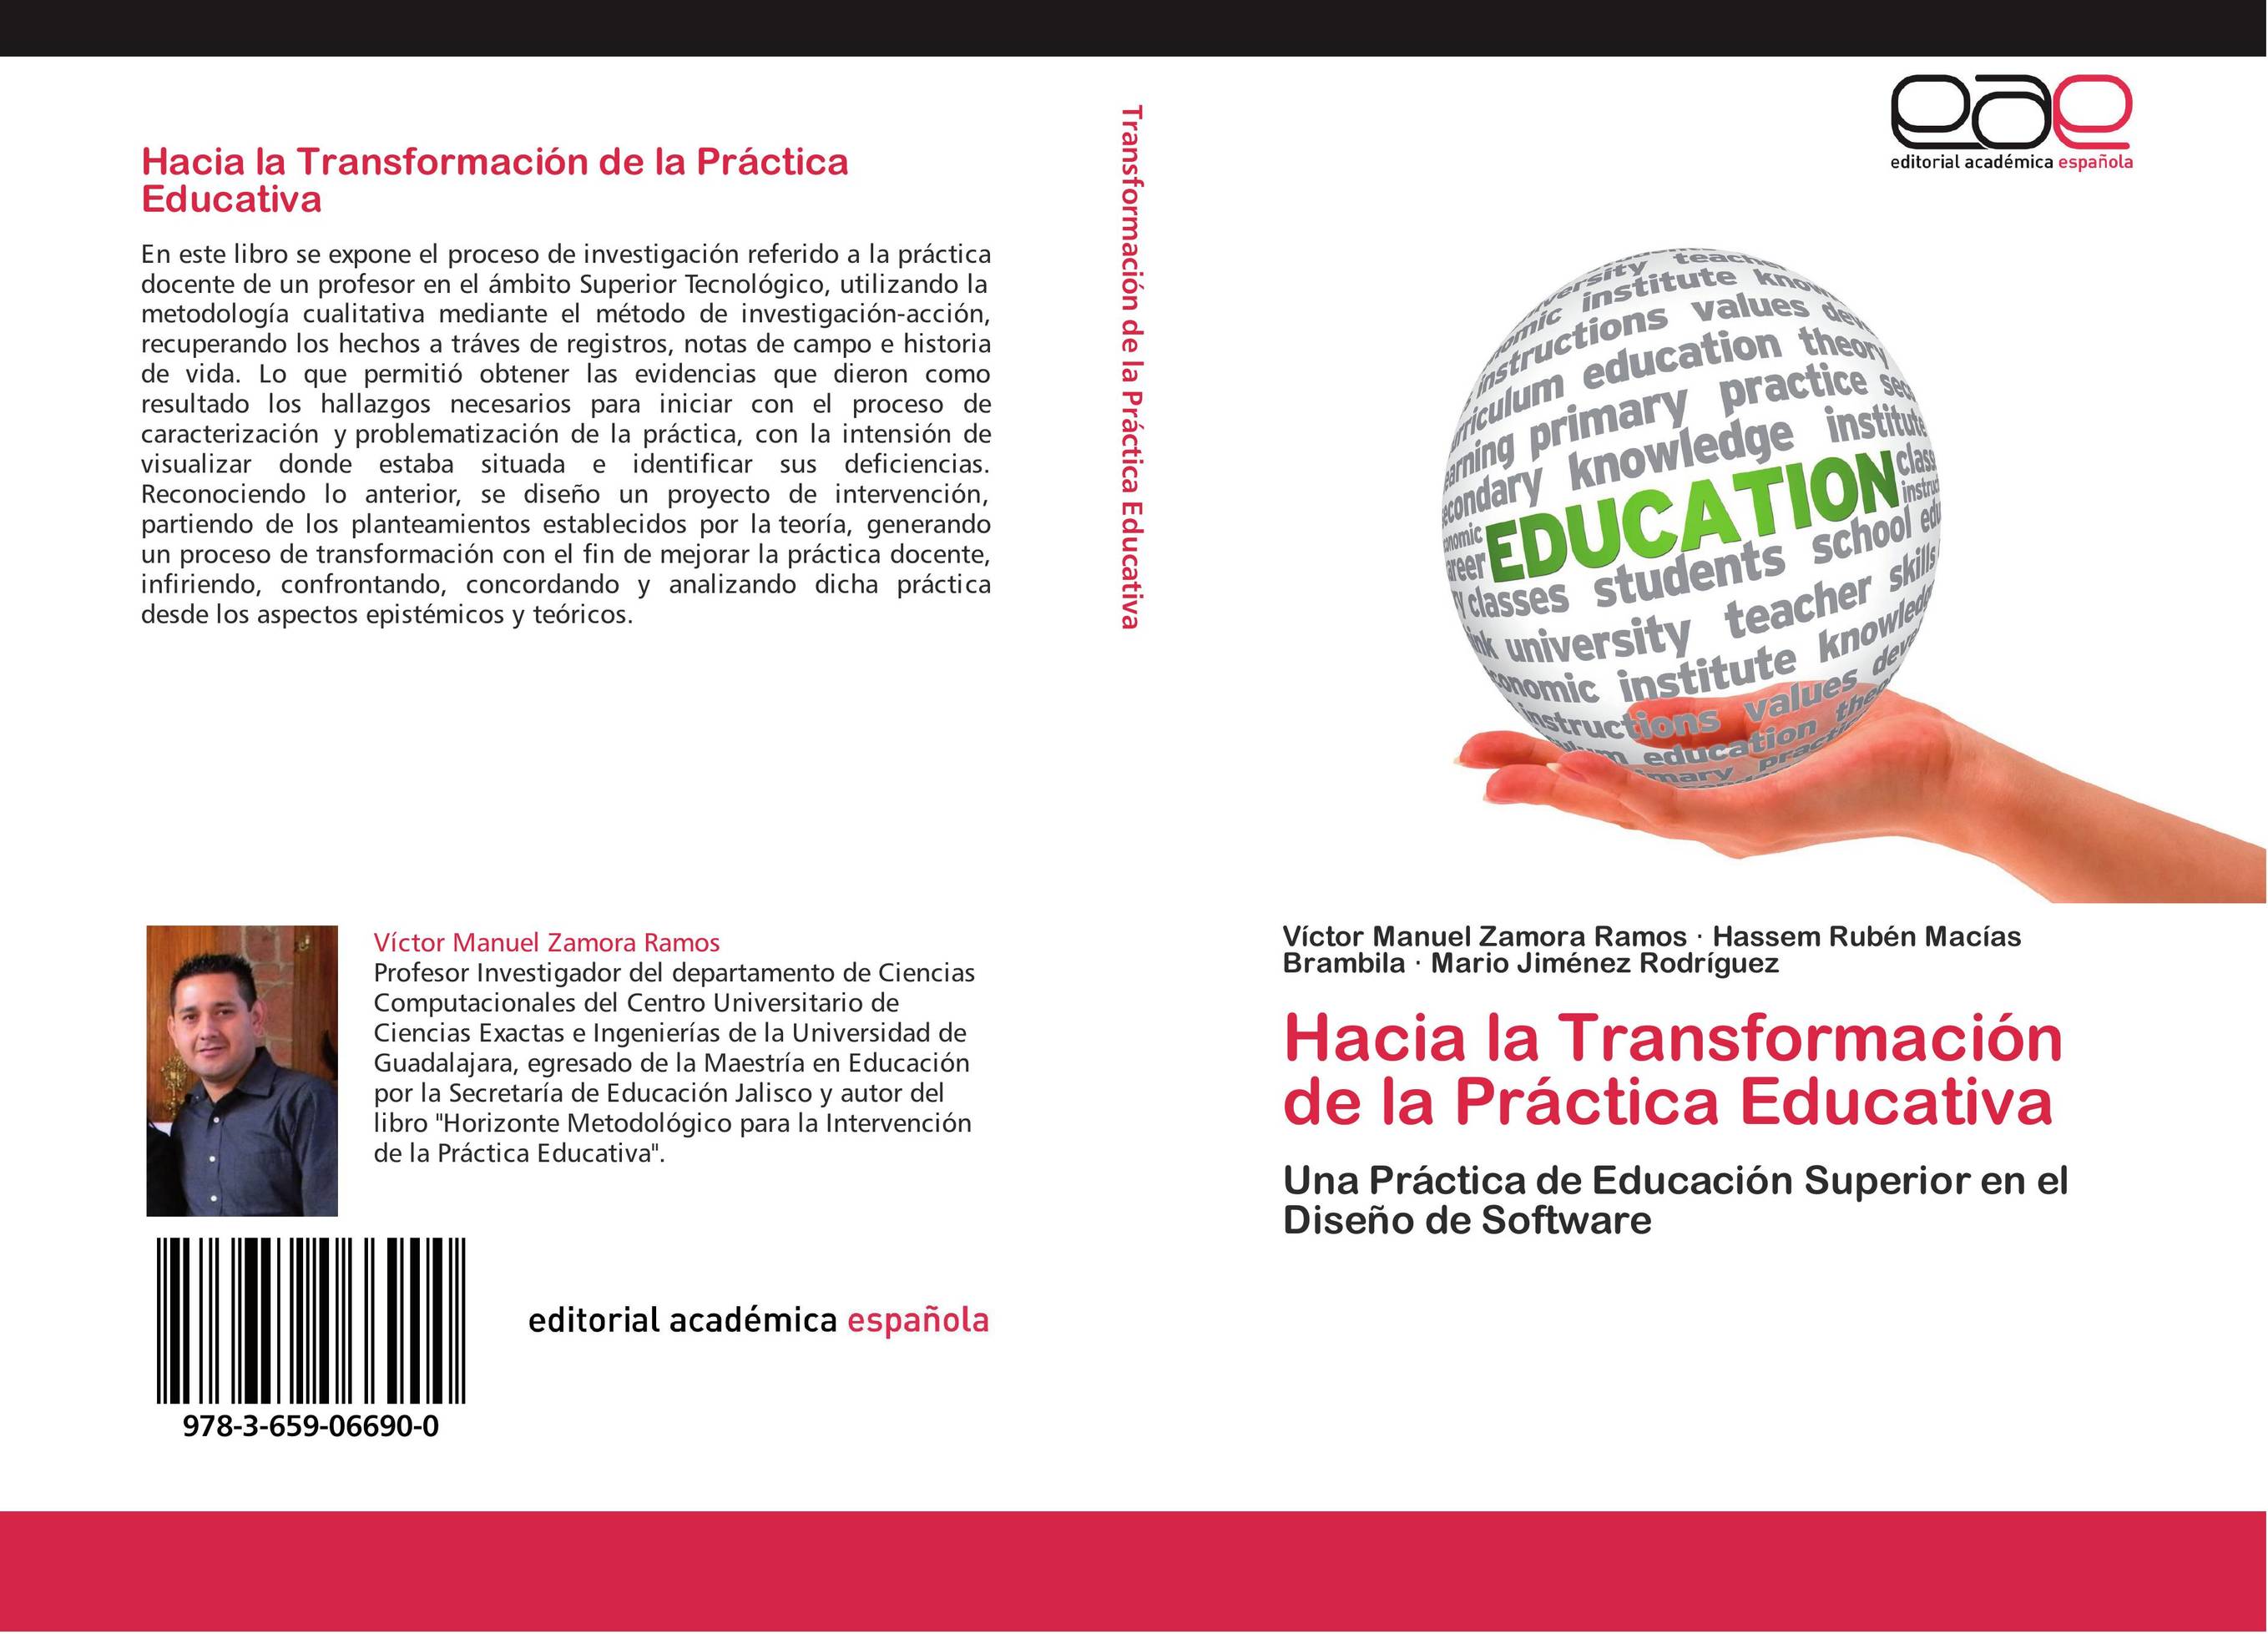 Hacia la Transformación de la Práctica Educativa